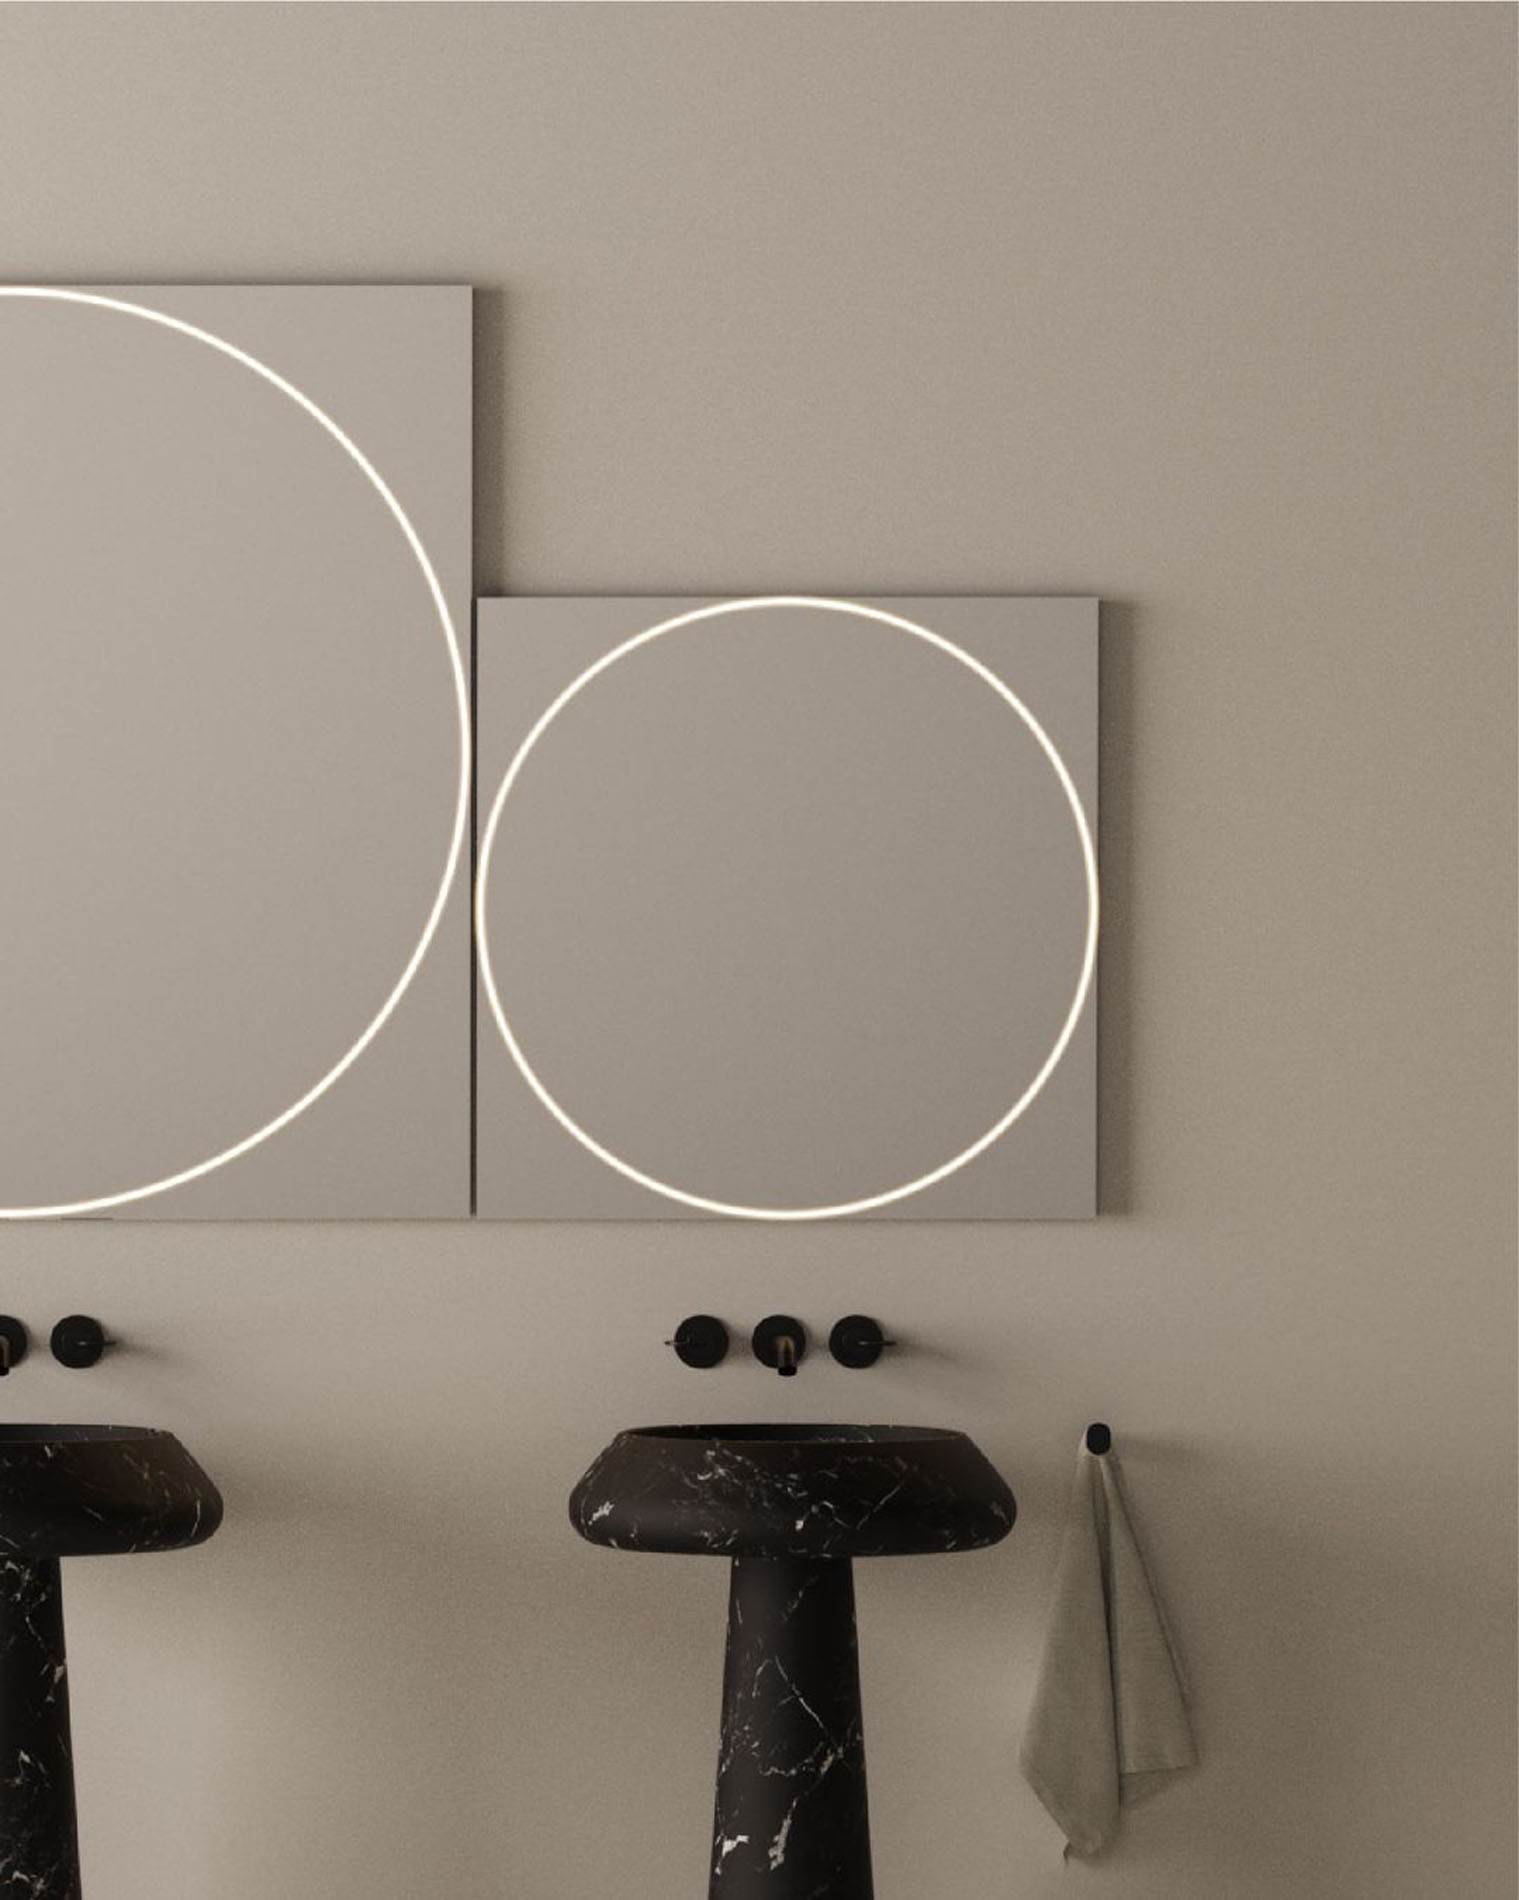 Nueva colección de espejos para baños "Vitruvio" en Barcelona